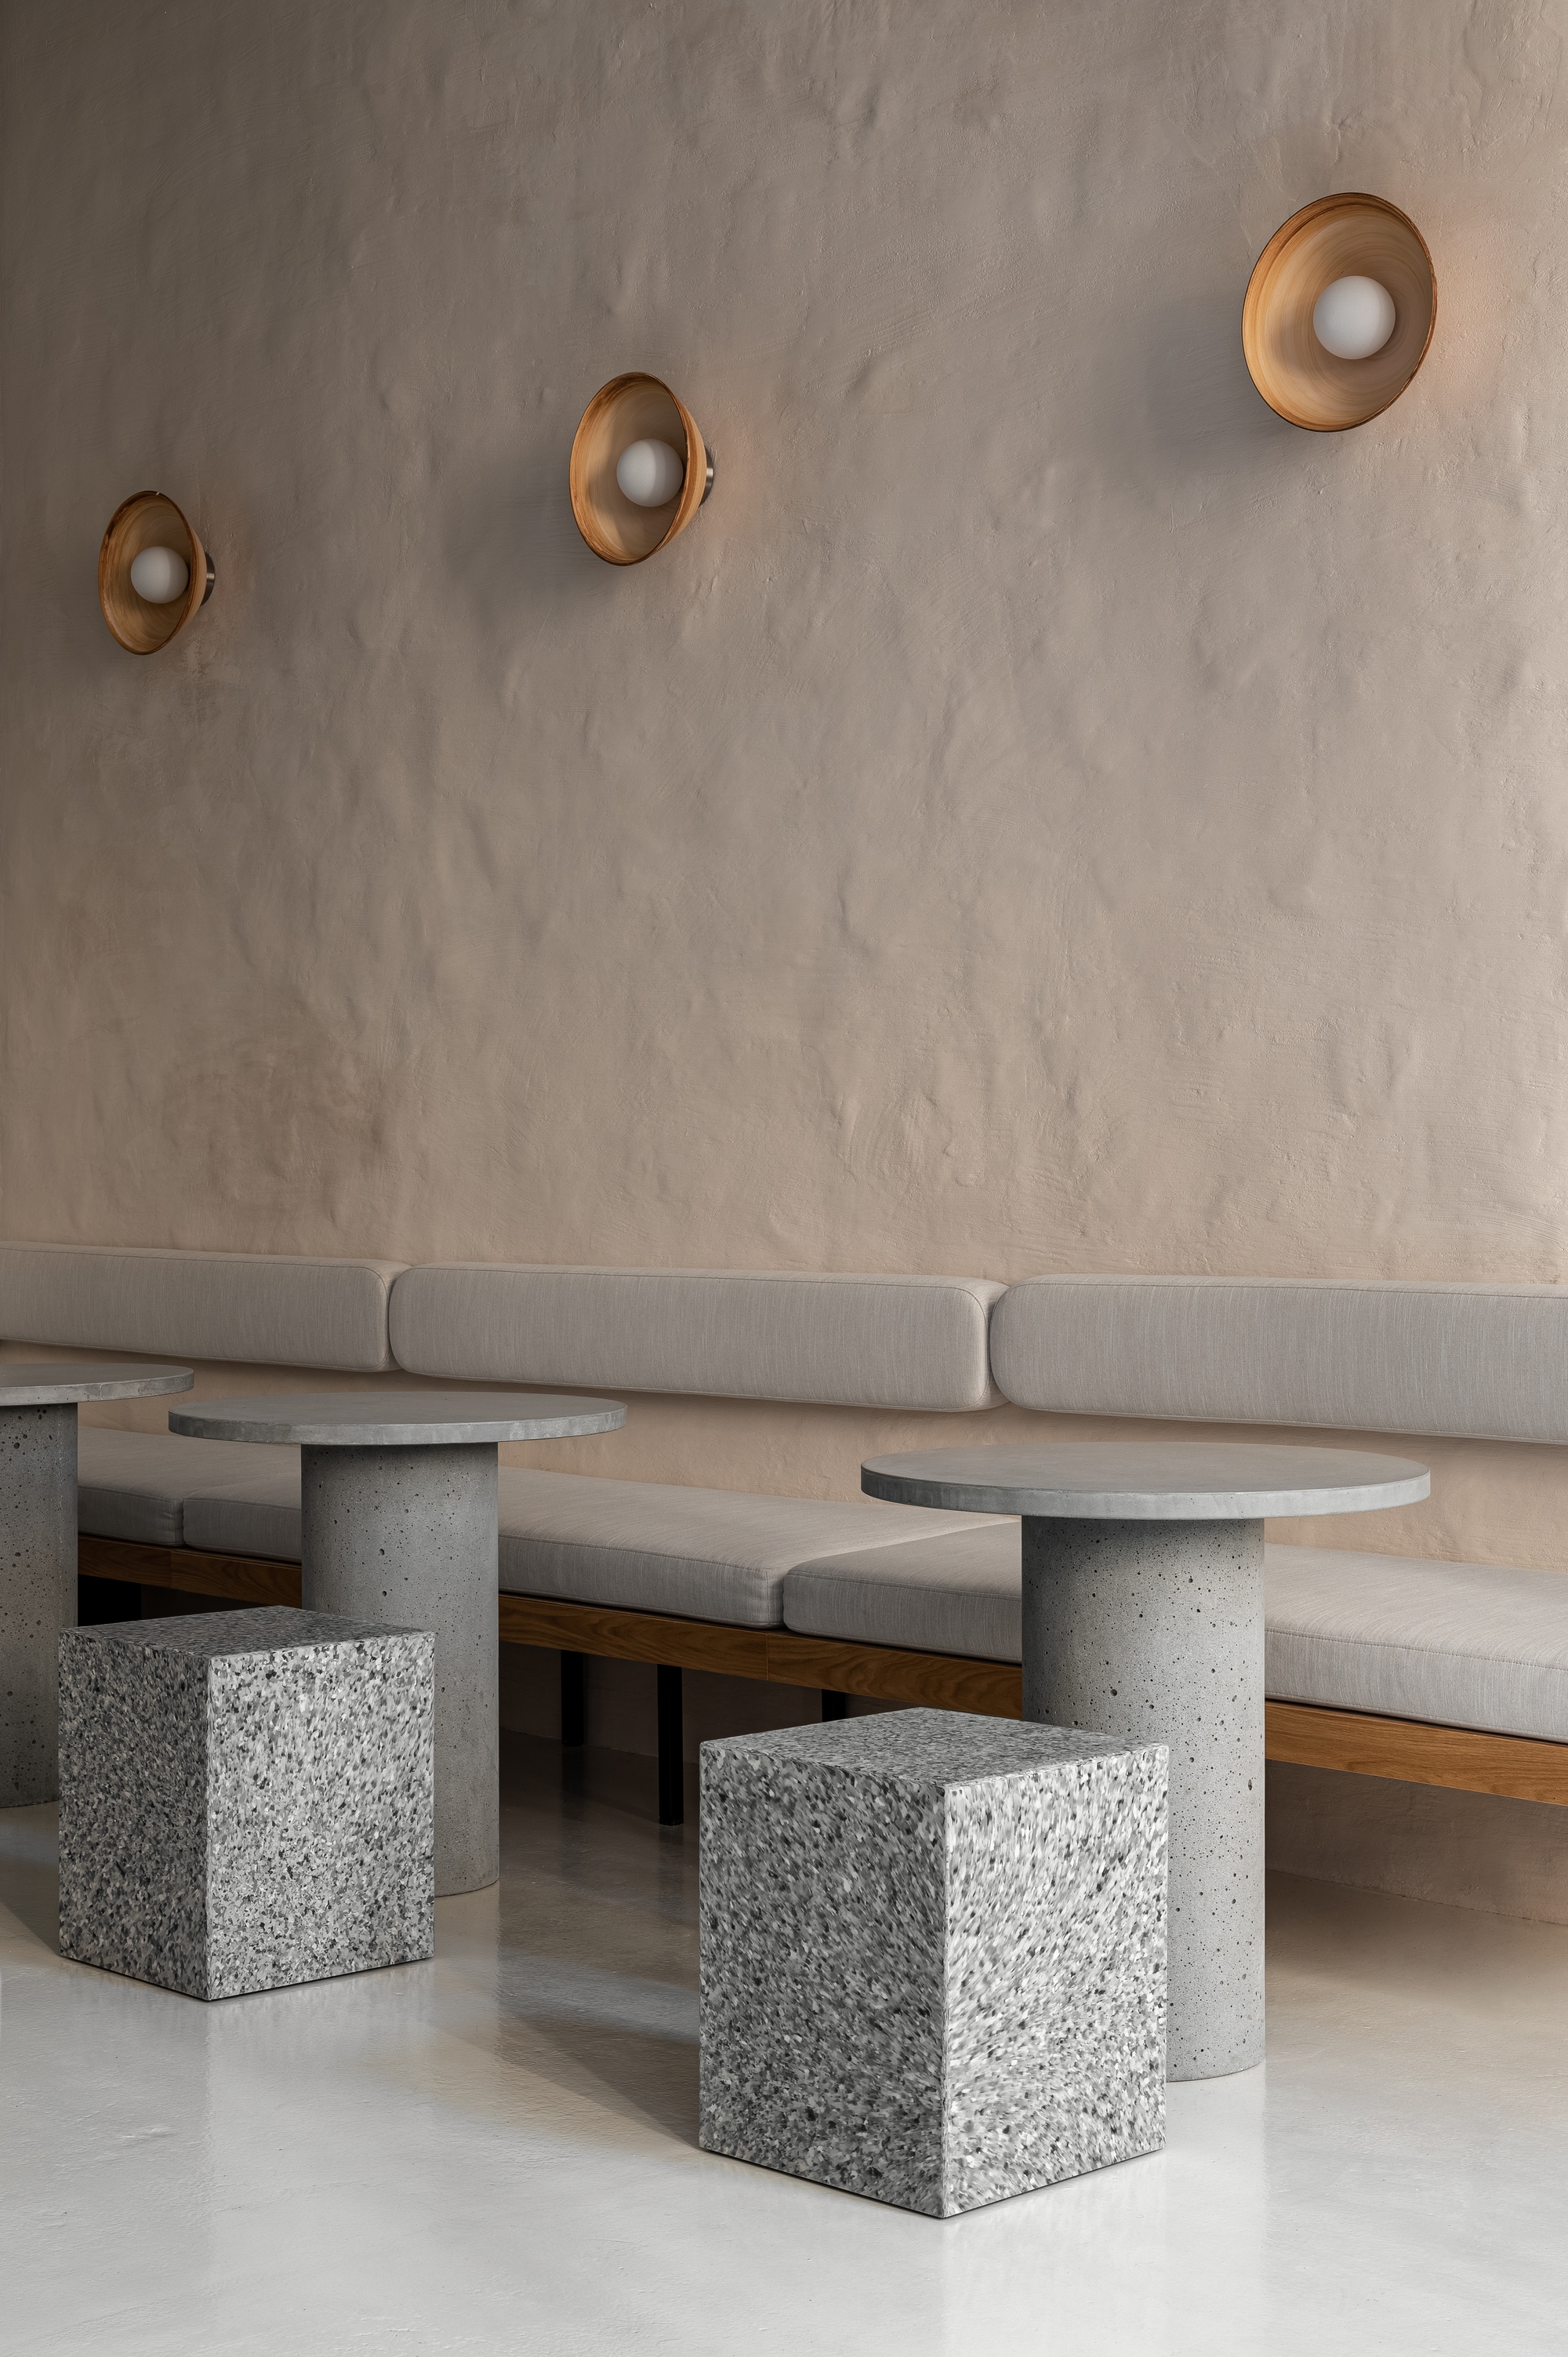 图片[6]|Istetyka咖啡馆|ART-Arrakis | 建筑室内设计的创新与灵感